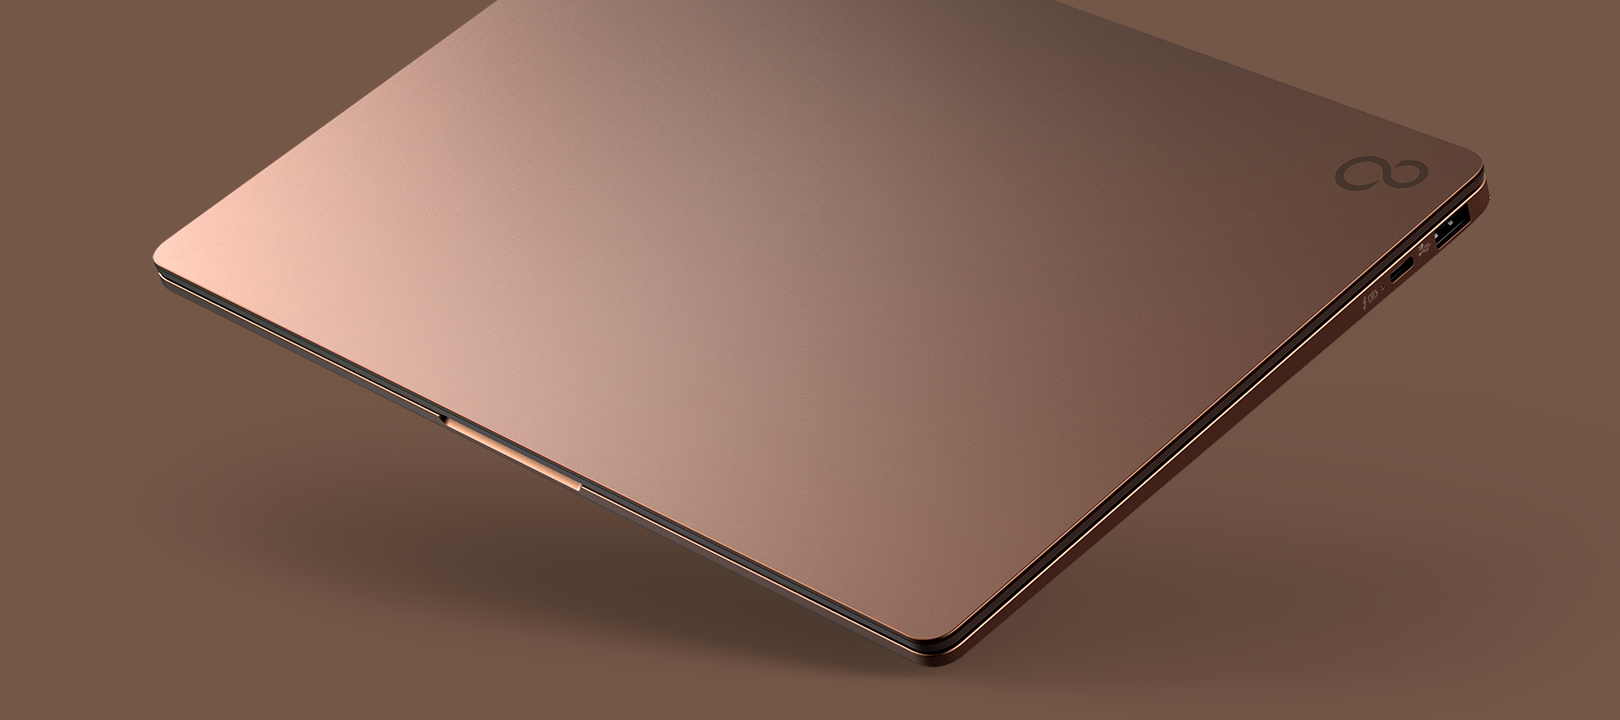 Mẫu laptop mới Fujitsu CH sở hữu thiết kế thời trang gọn nhẹ